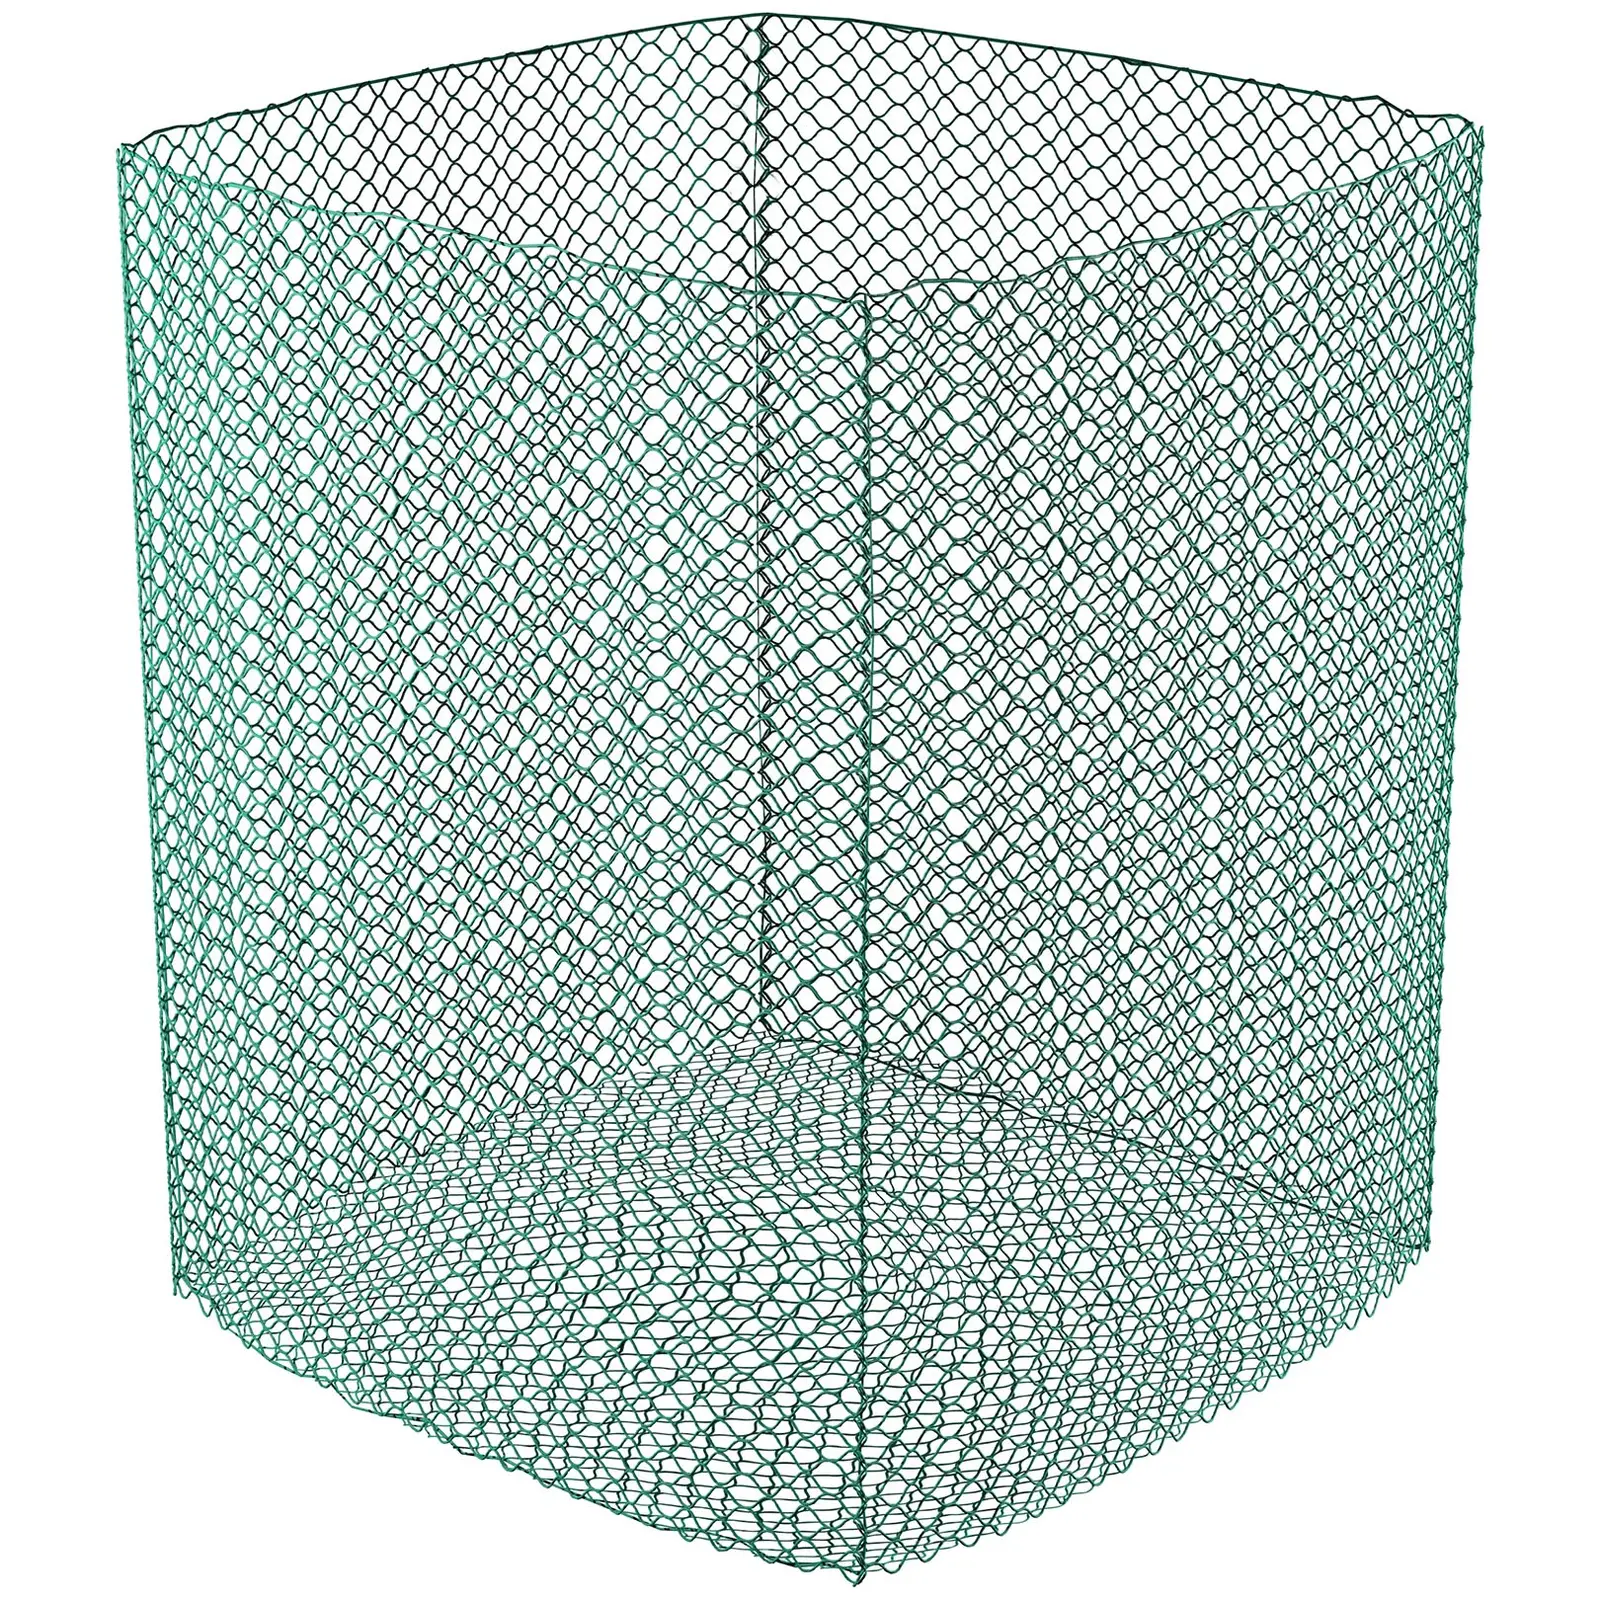 Okrogla mreža za bale - 1,4 x 1,4 x 1,6 m - drobna mreža